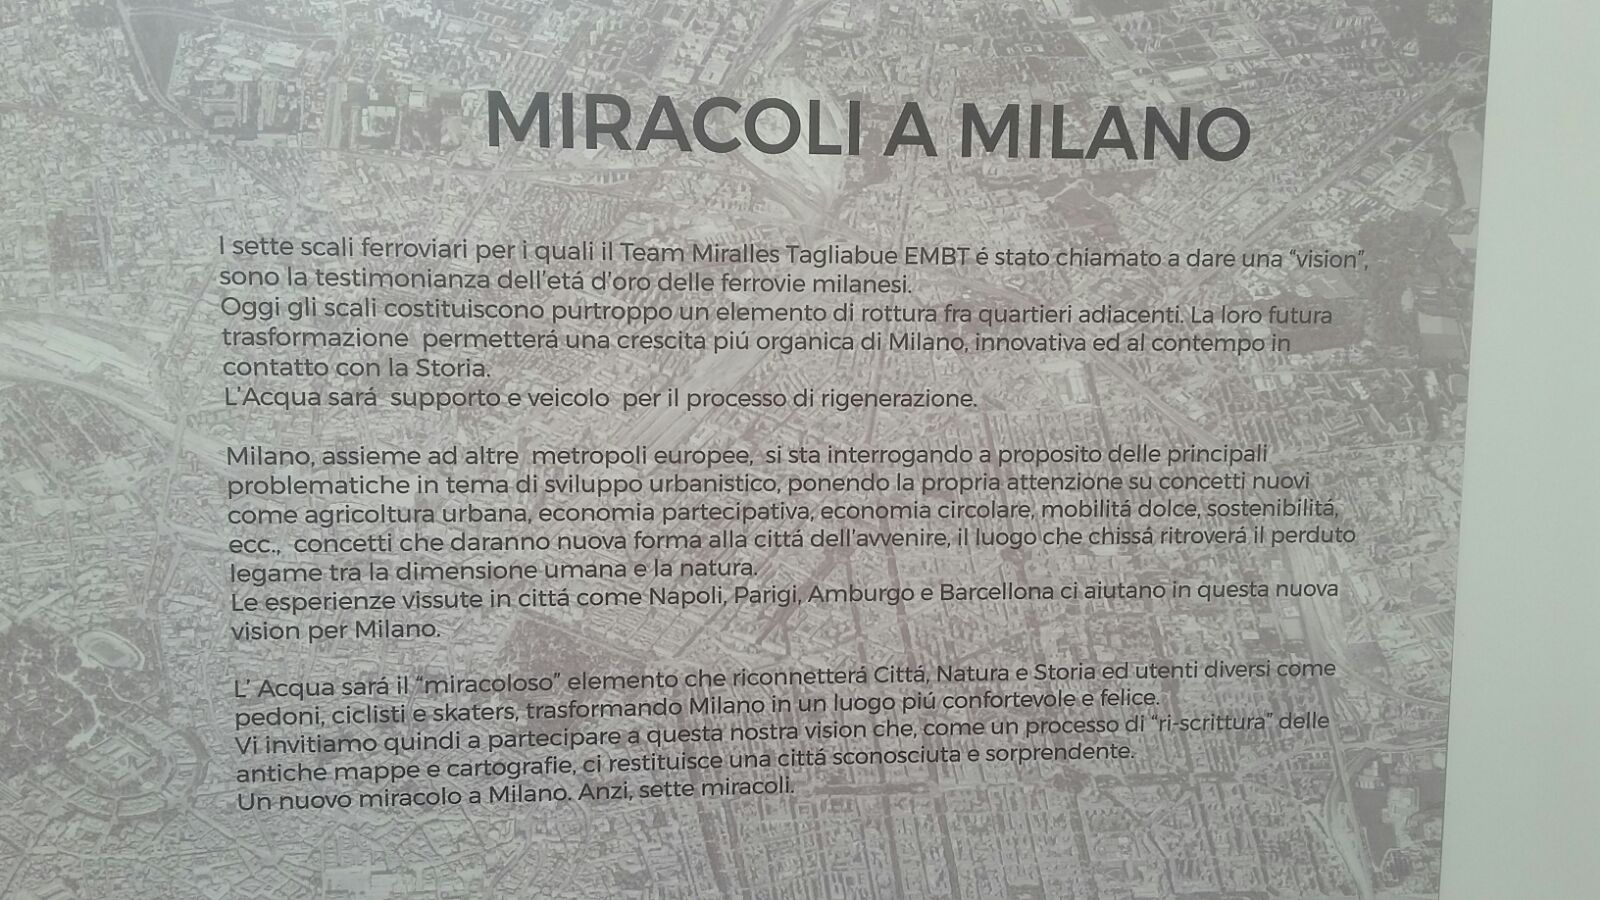 Il manifesto dello scenario "Miracoli a Milano" - Team Embt Miralles Tagliabue